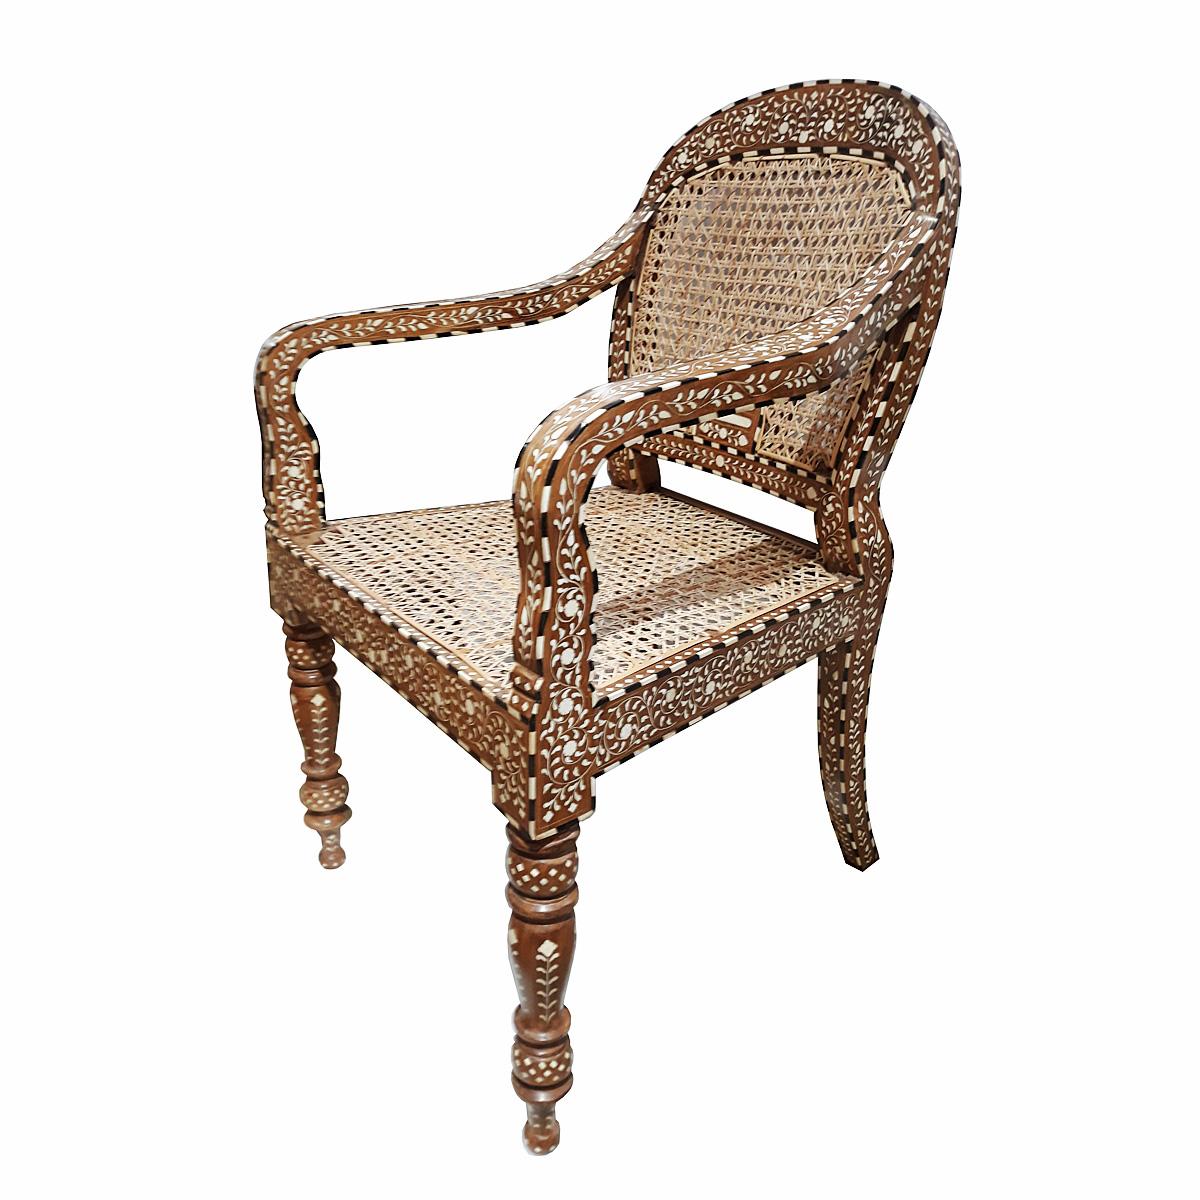 Un magnifique fauteuil, fabriqué à la main en Inde en bois de teck vieilli et naturellement assaisonné, incrusté d'os provenant de sources sans cruauté et de canne tressée artisanalement. 

La marqueterie est une technique décorative ancienne qui